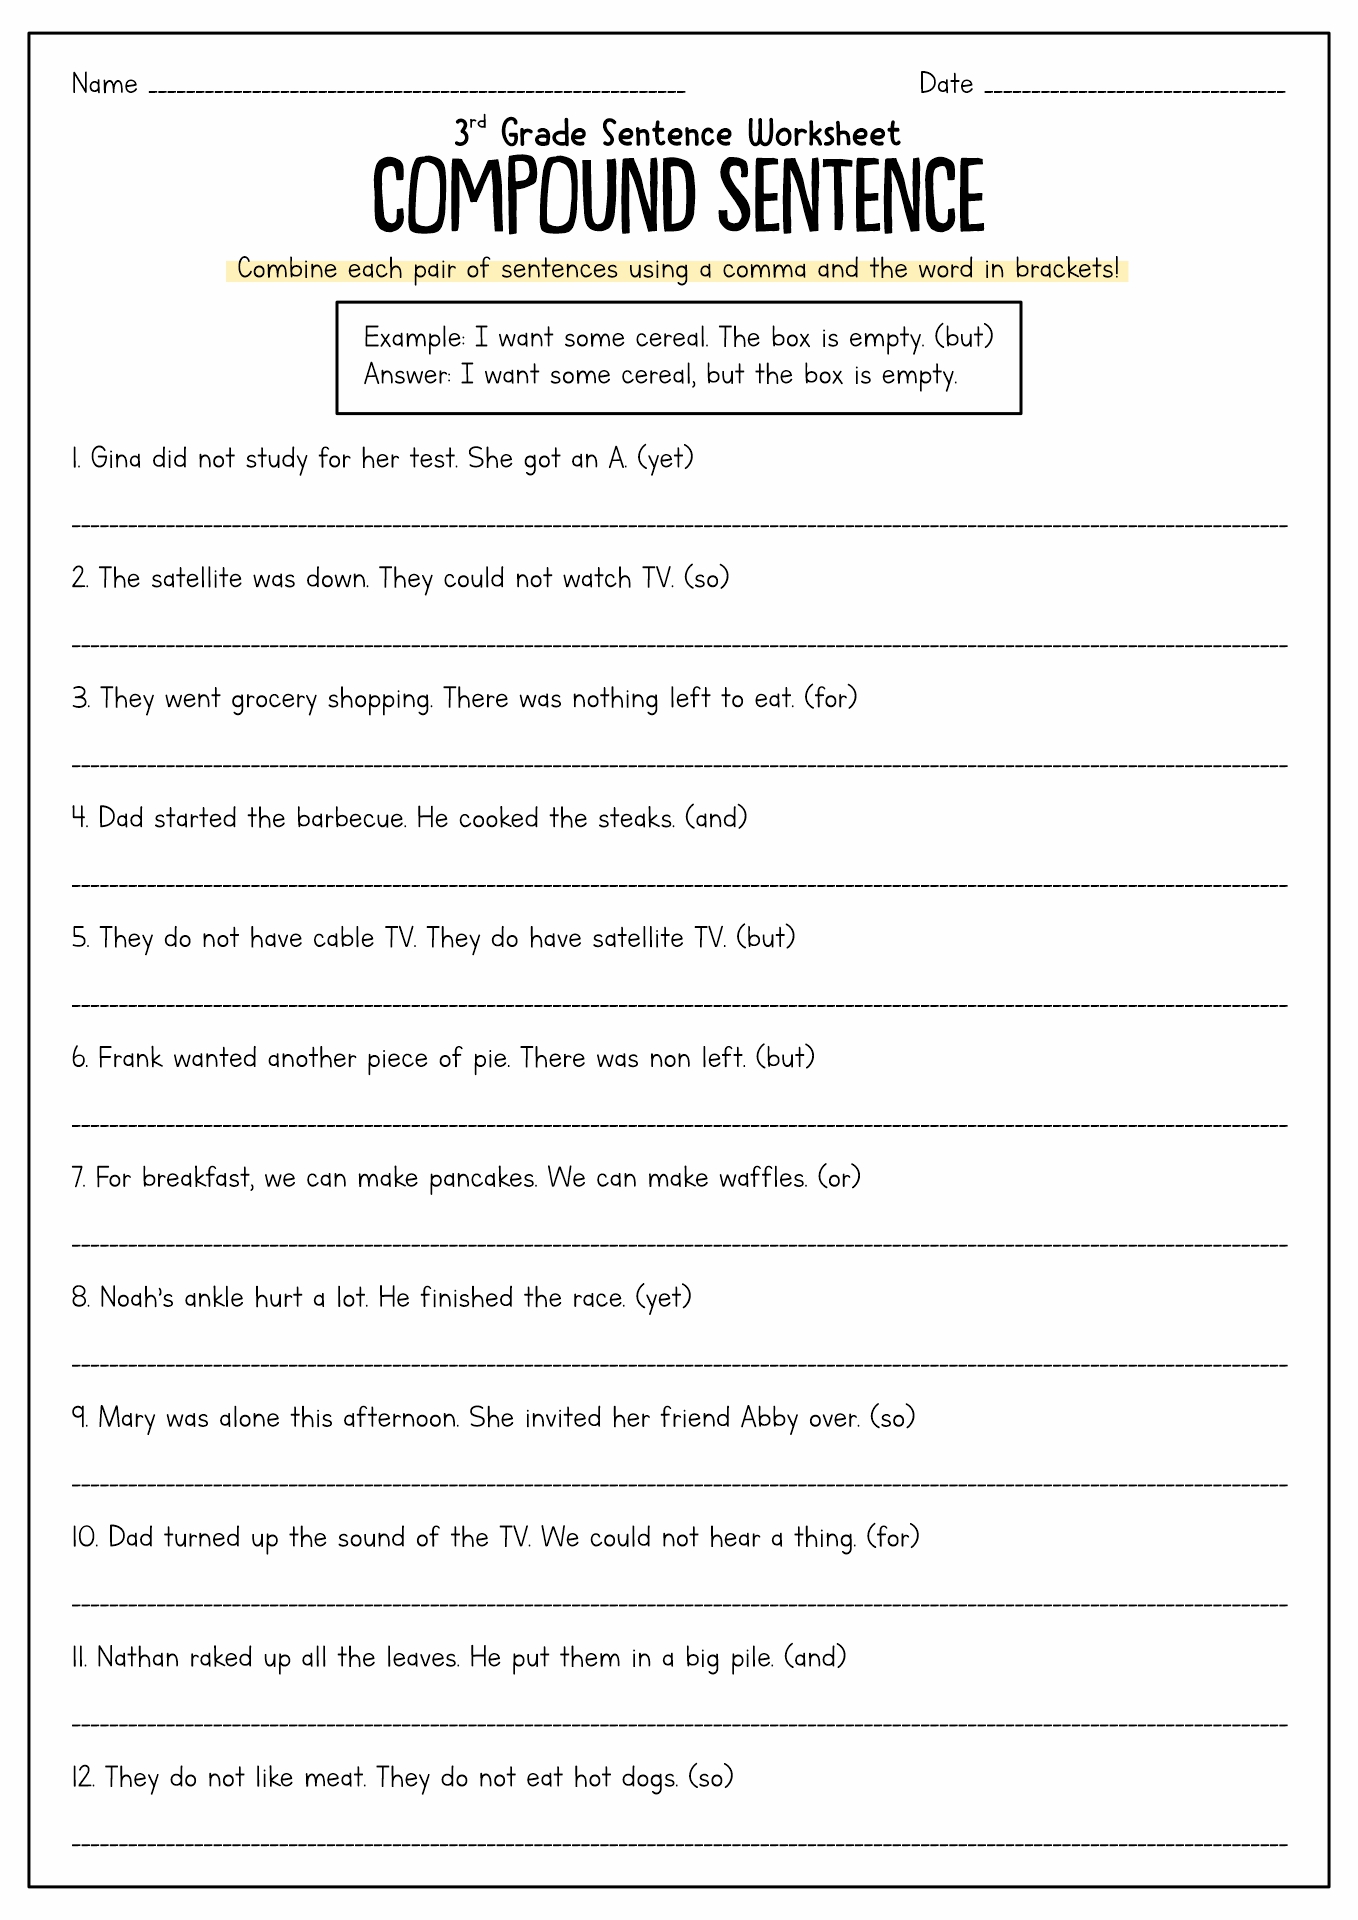 compound-sentences-worksheet-2nd-grade